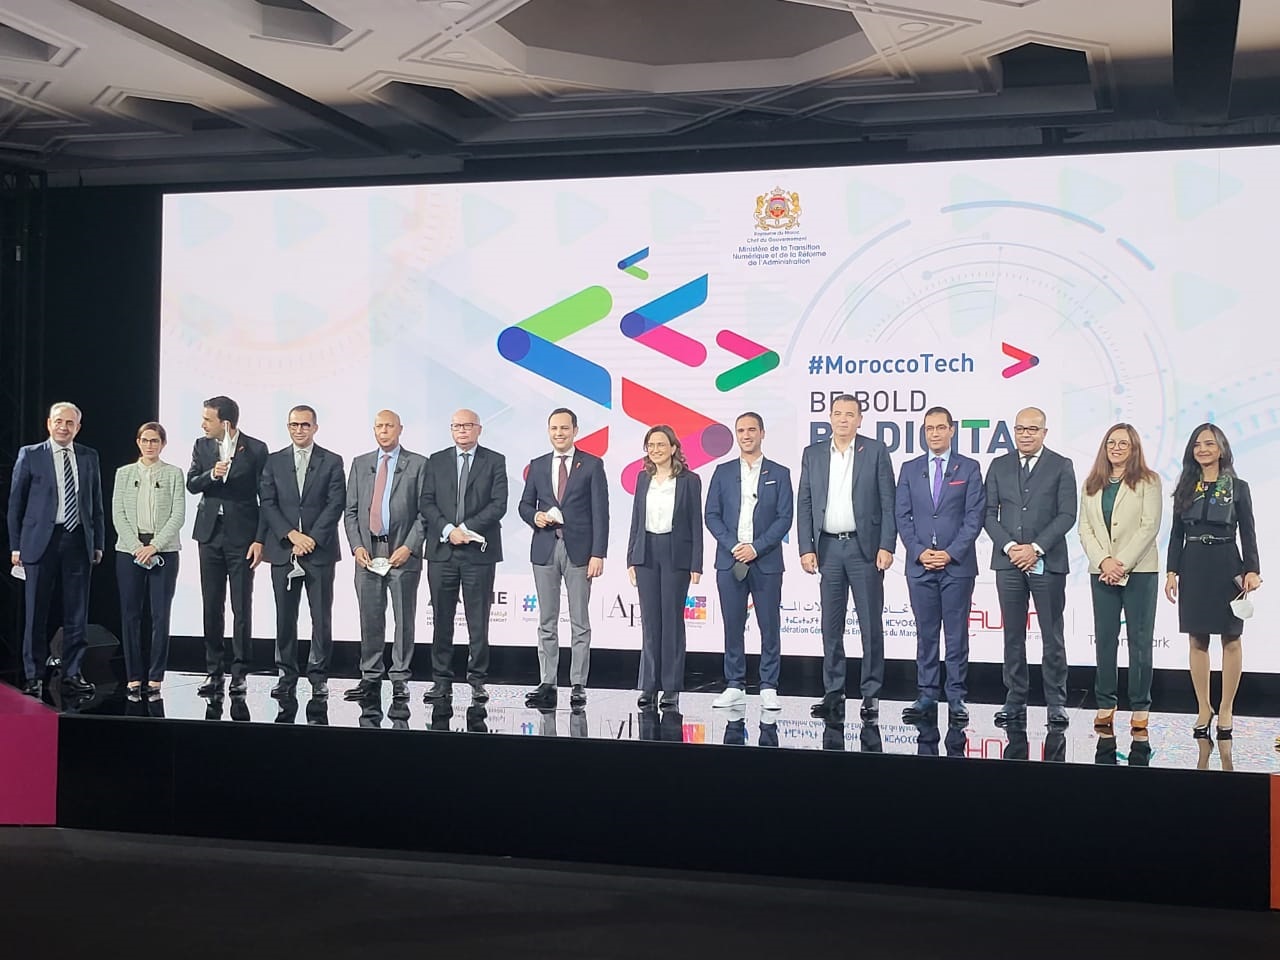 Le Maroc lance la marque MoroccoTech et concrétise son ambition de devenir une Digital Nation